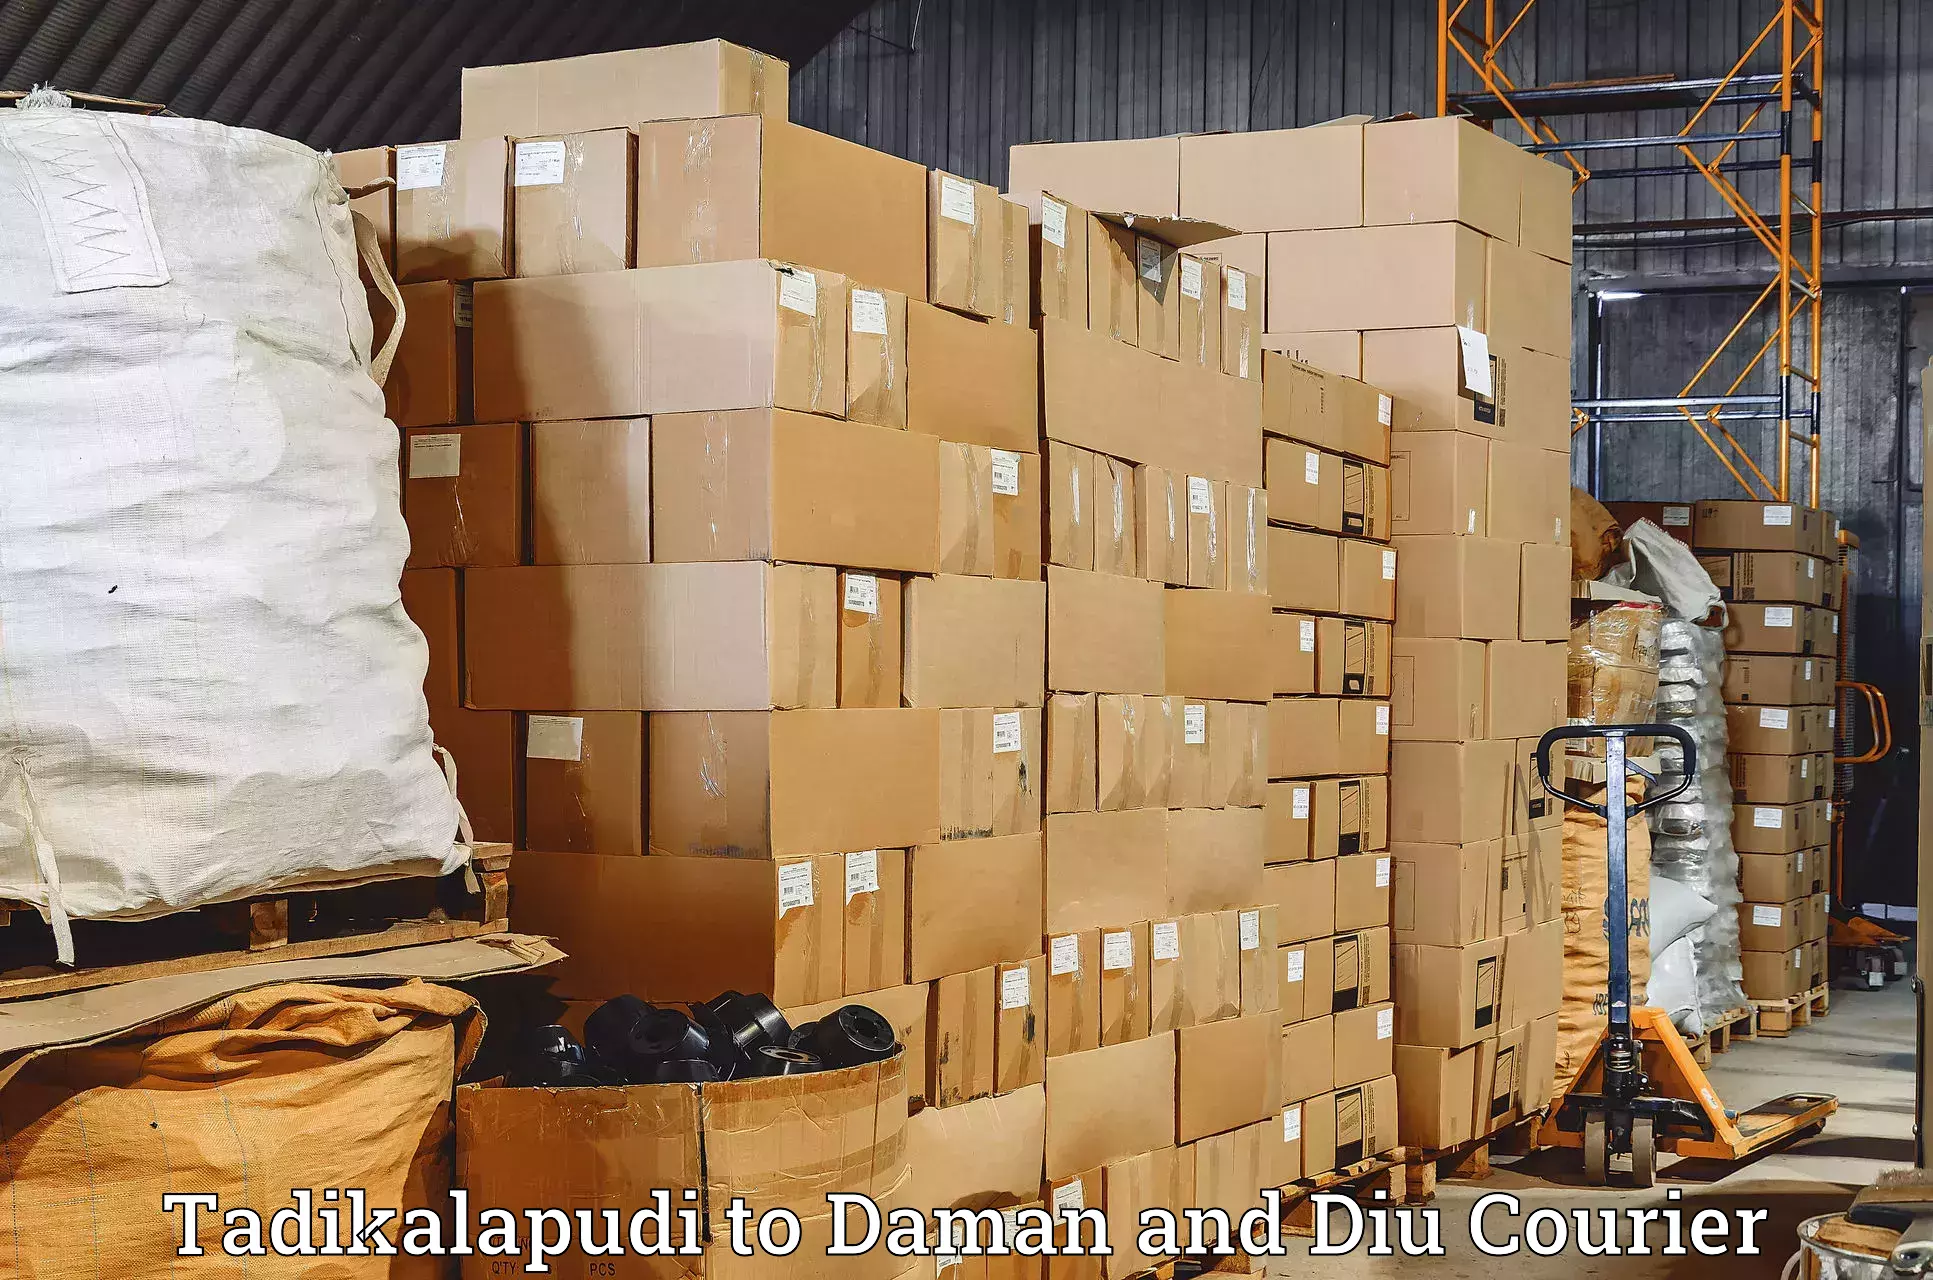 Global freight services Tadikalapudi to Daman and Diu